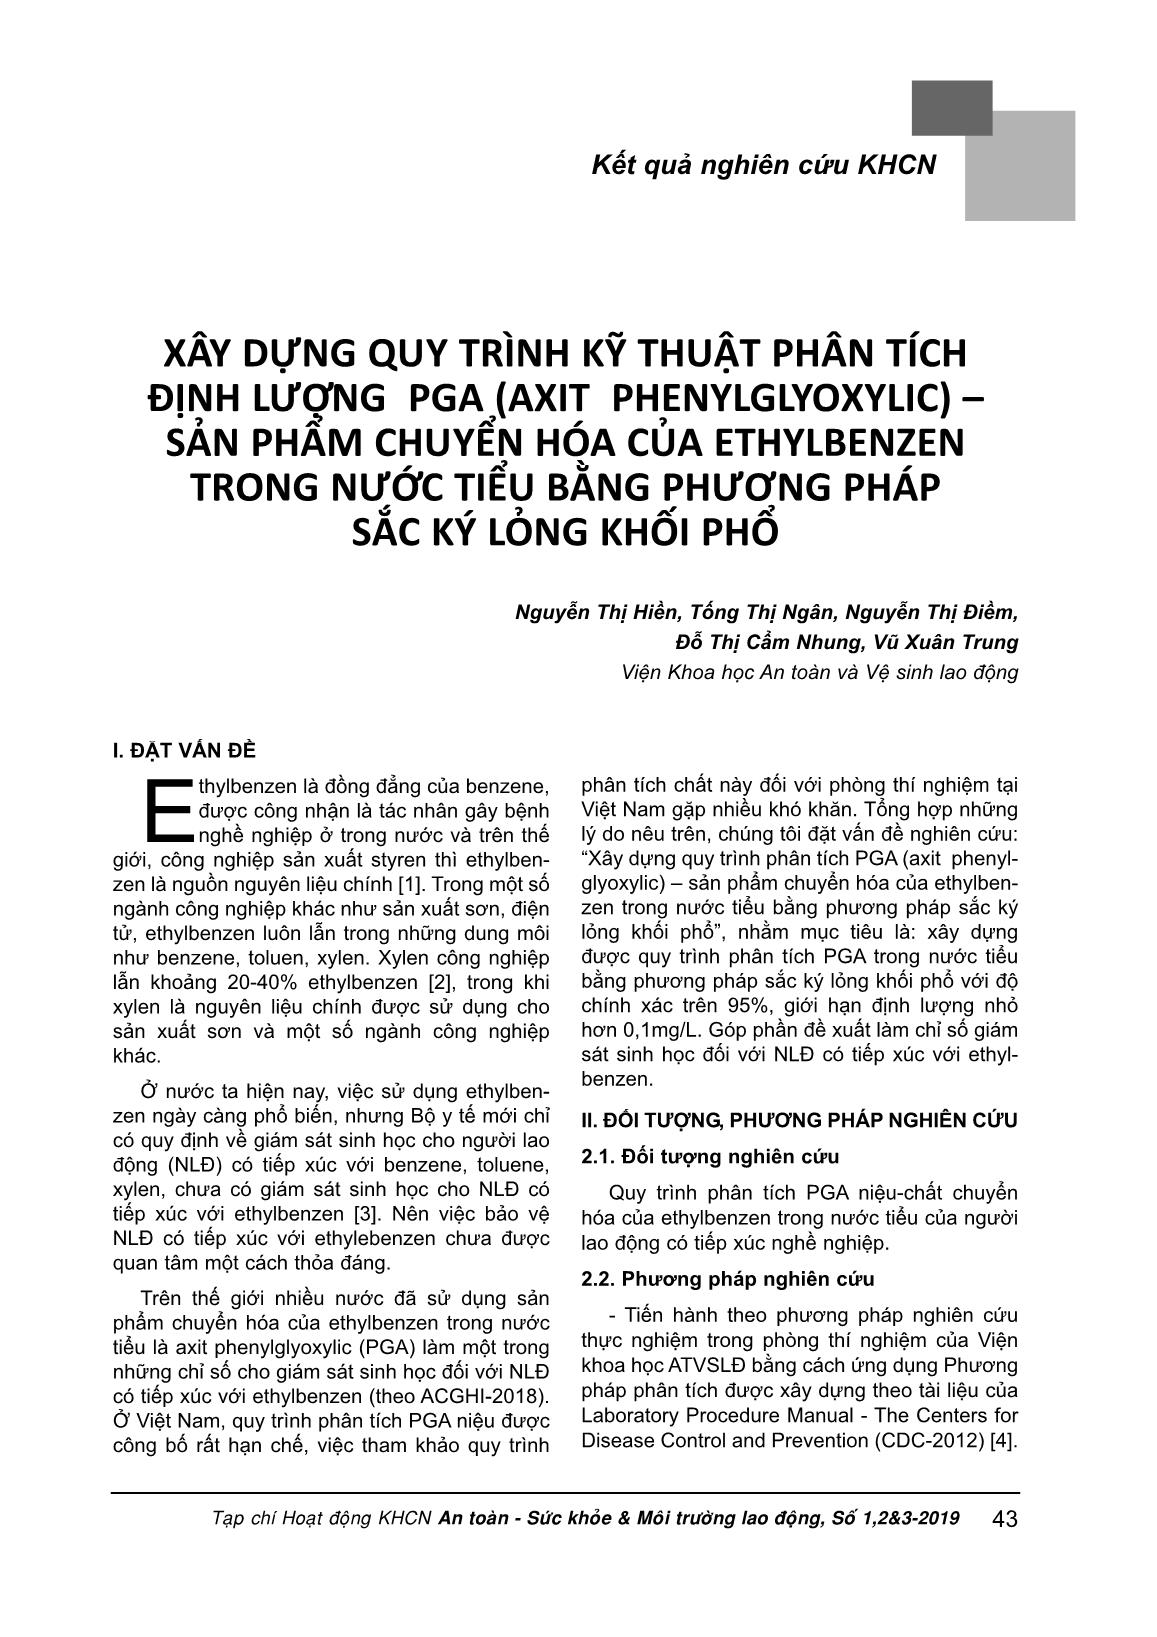 Xây dựng quy trình kỹ thuật phân tích định lượng PGA (Axit Phenylglyoxylic) – sản phẩm chuyển hóa của Ethylbenzen trong nước tiểu bằng phương pháp sắc ký lỏng khối phổ trang 1